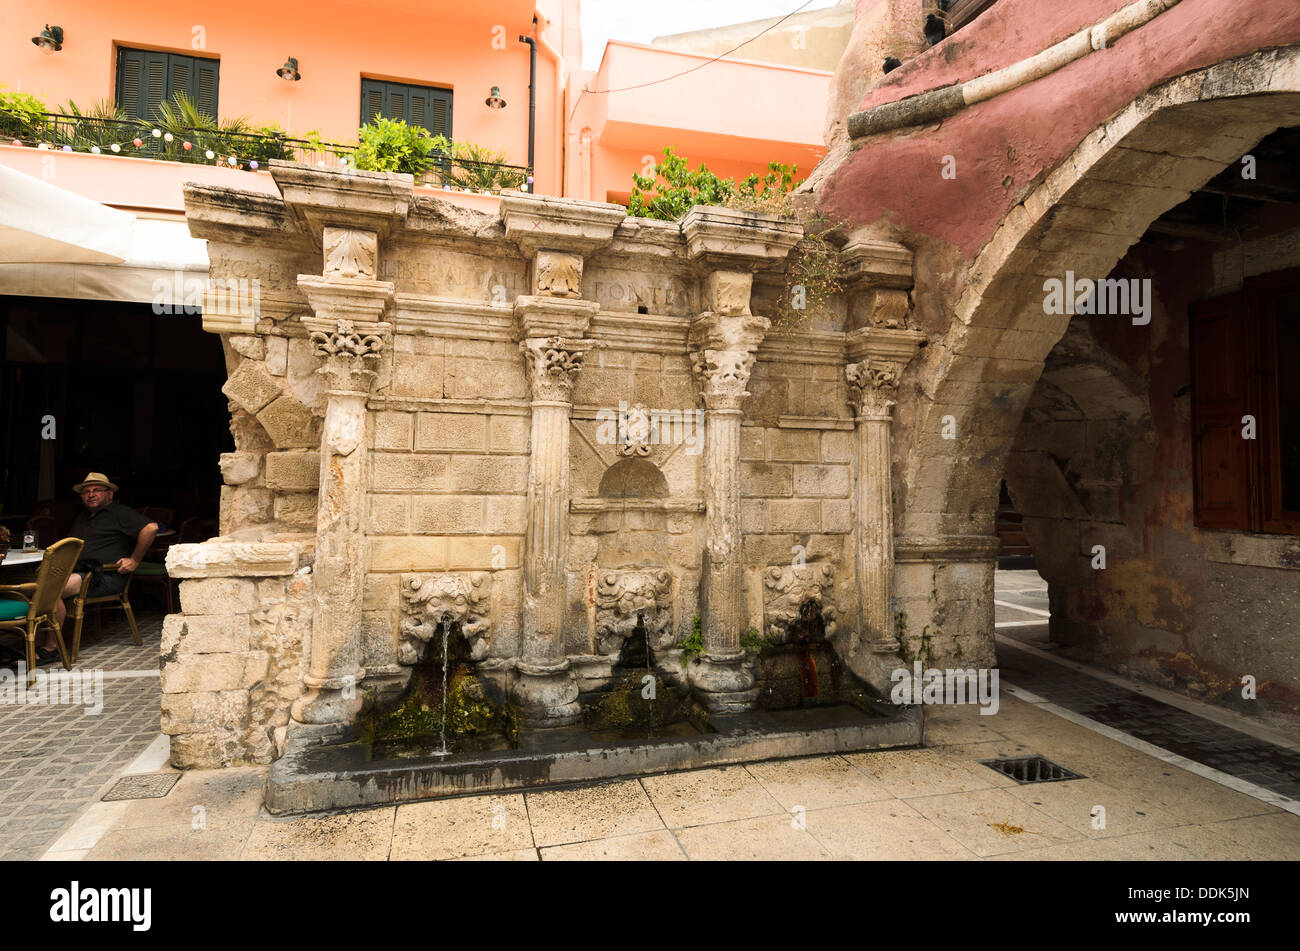 Veneziano fontana Rimondi, città vecchia, Rethymnon, Creta, Grecia Il Rimondi fontana fu costruito nel 1626 dal rettore veneziano (governatore) di Rethymnon A. Rimondi. Foto Stock